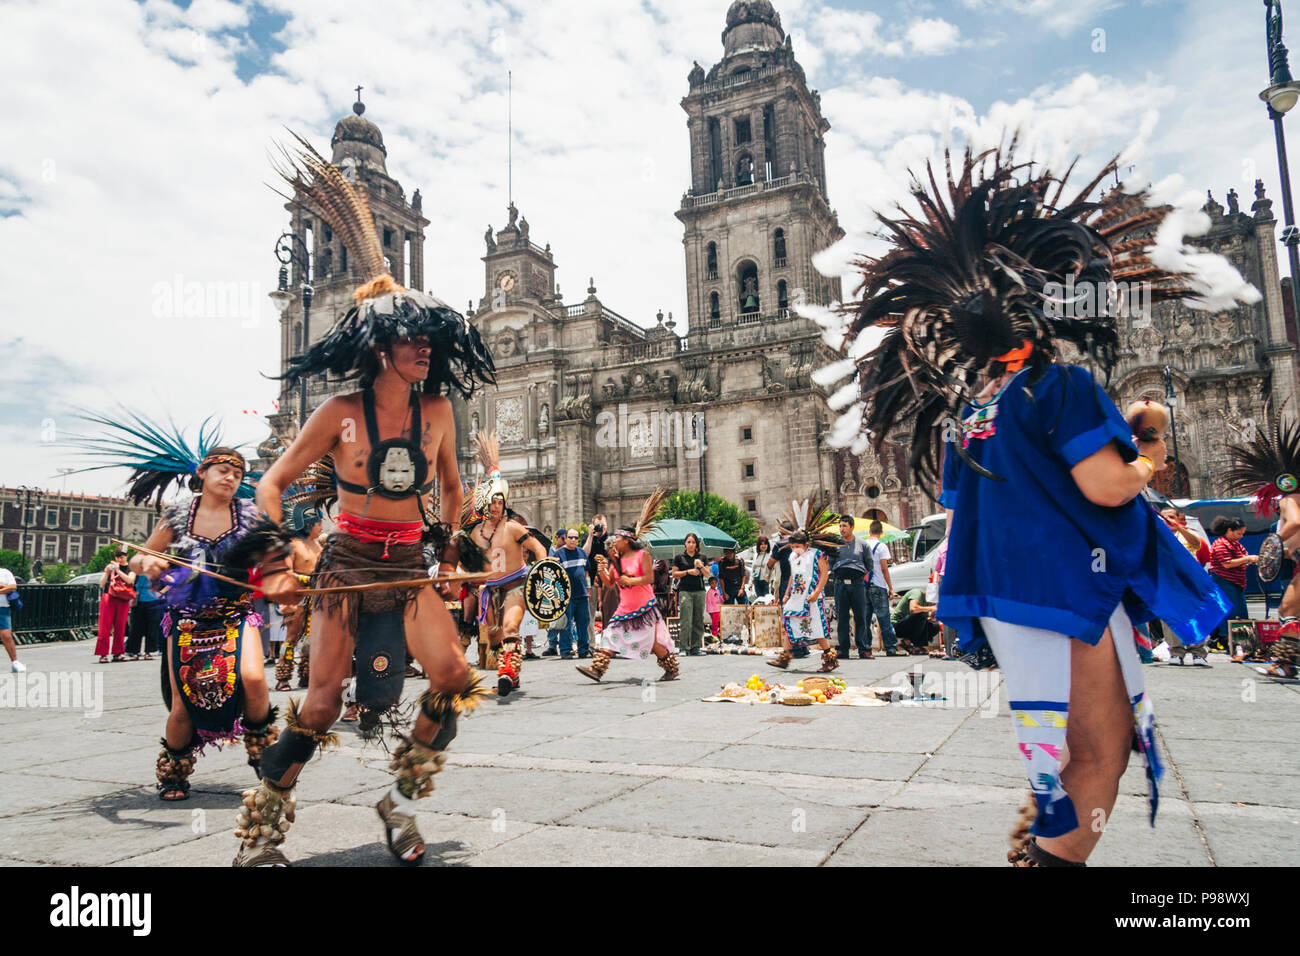 La ville de Mexico, Mexique : Aztec danser les gens en face de la cathédrale à la place Zócalo (Plaza de la Constitución) dans le centre historique de Mexico Ci Banque D'Images